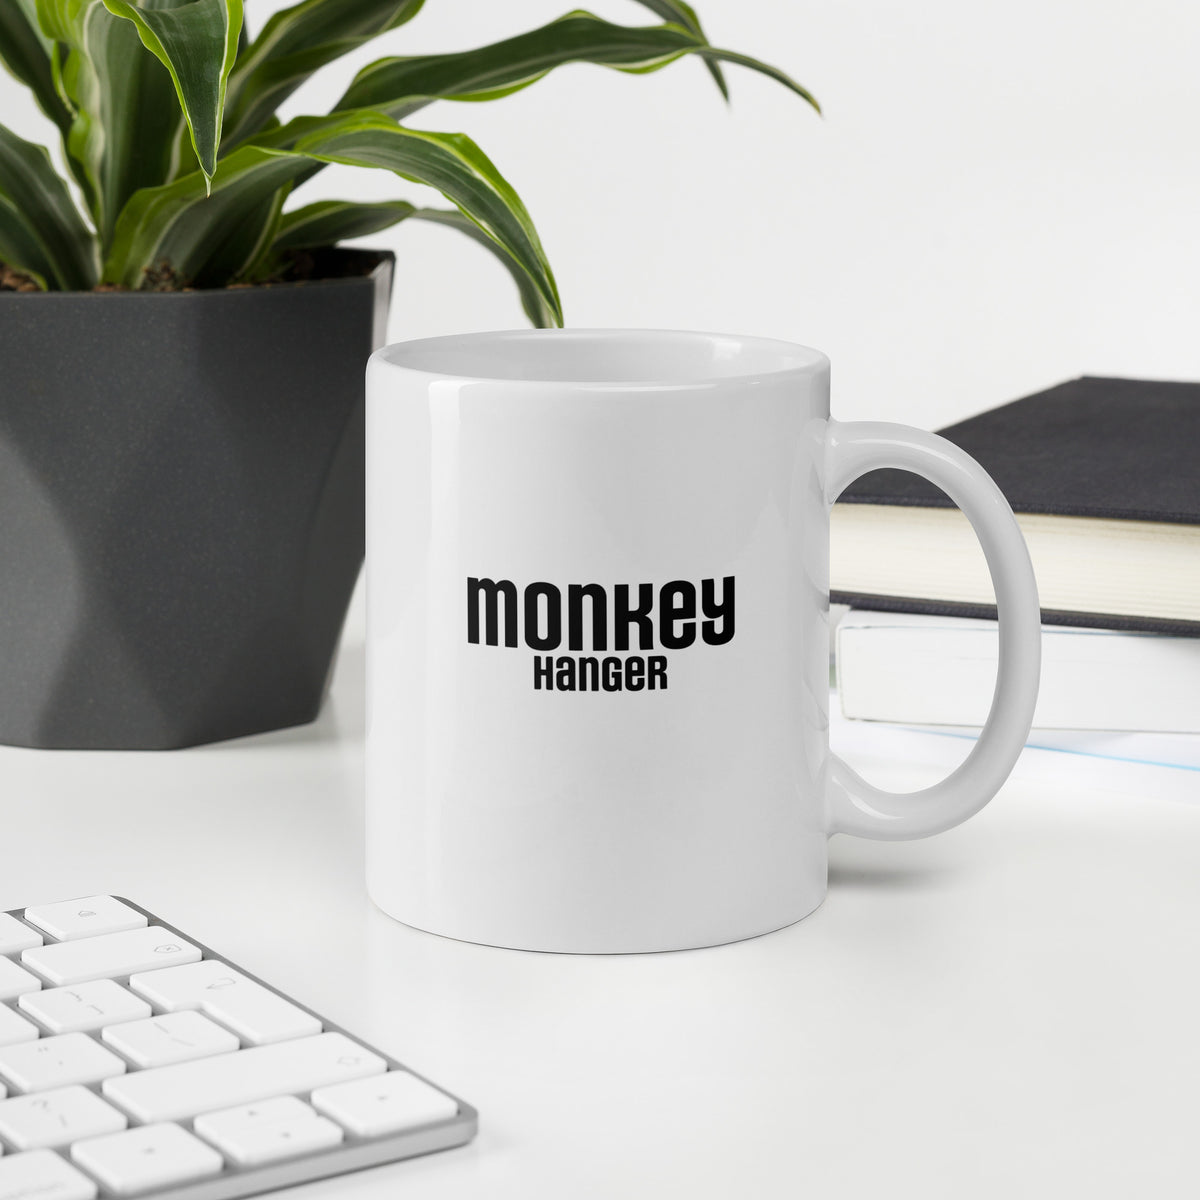 Monkey Hanger Coffee Mug